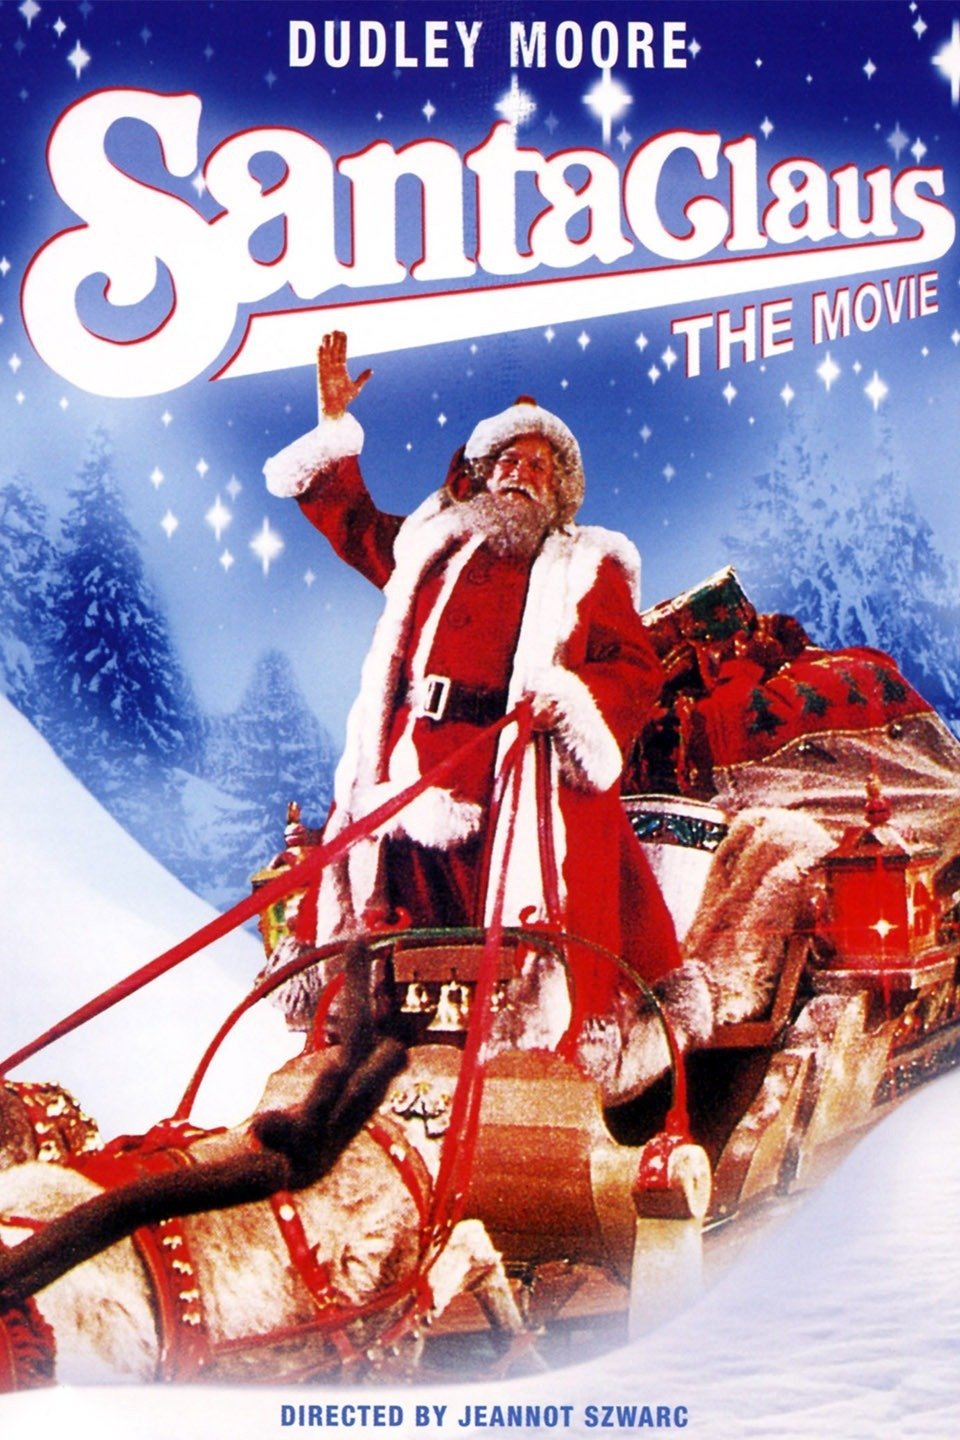 Cele mai proaste filme de Crăciun. La ce să nu te uiți în perioada sărbătorilor - Imaginea 6